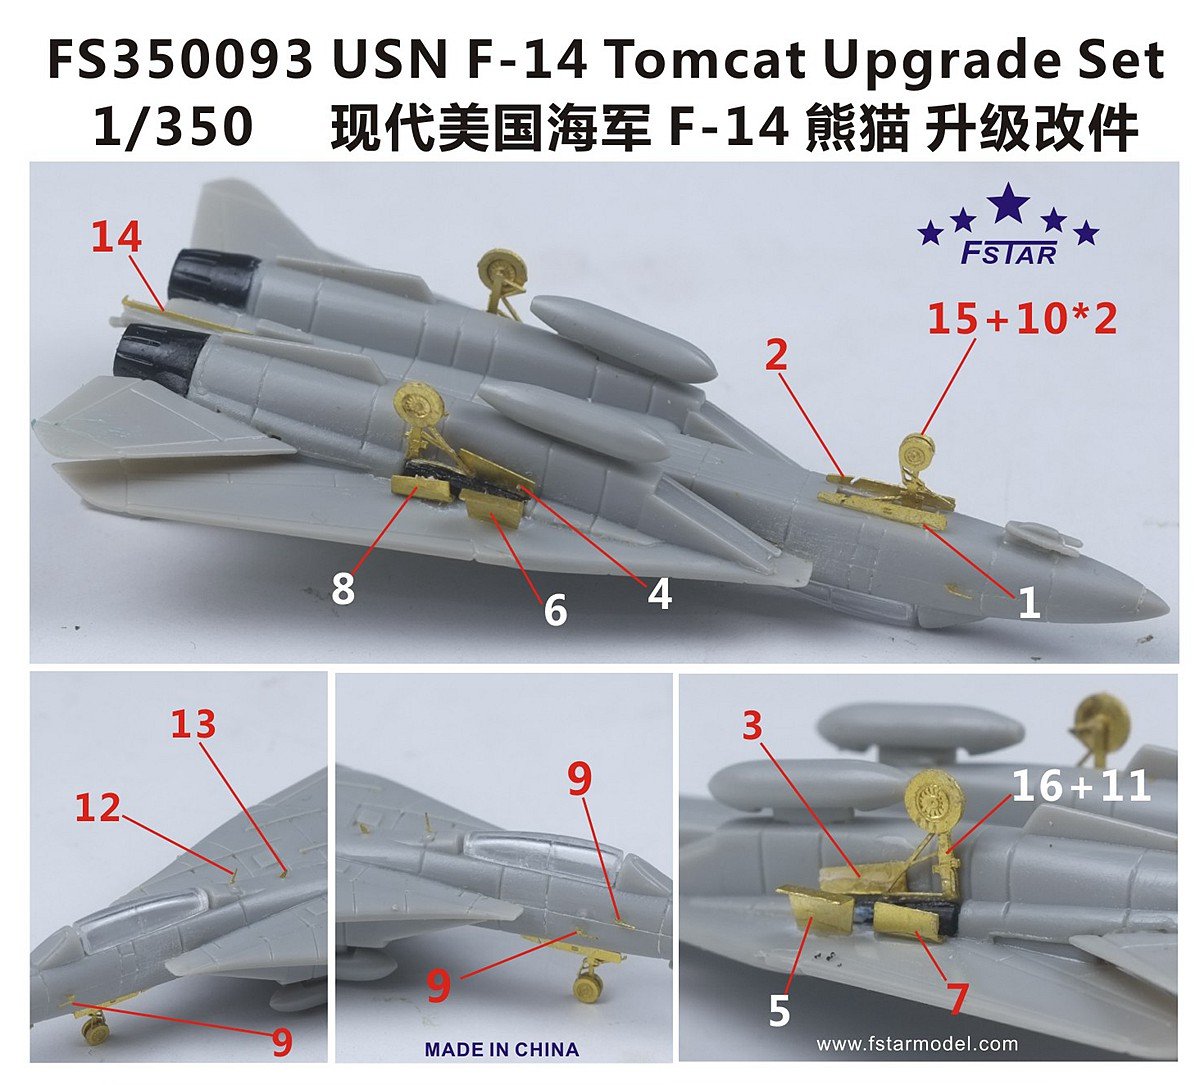 1/350 USN F-14 Tomcat Upgrade Set - Click Image to Close